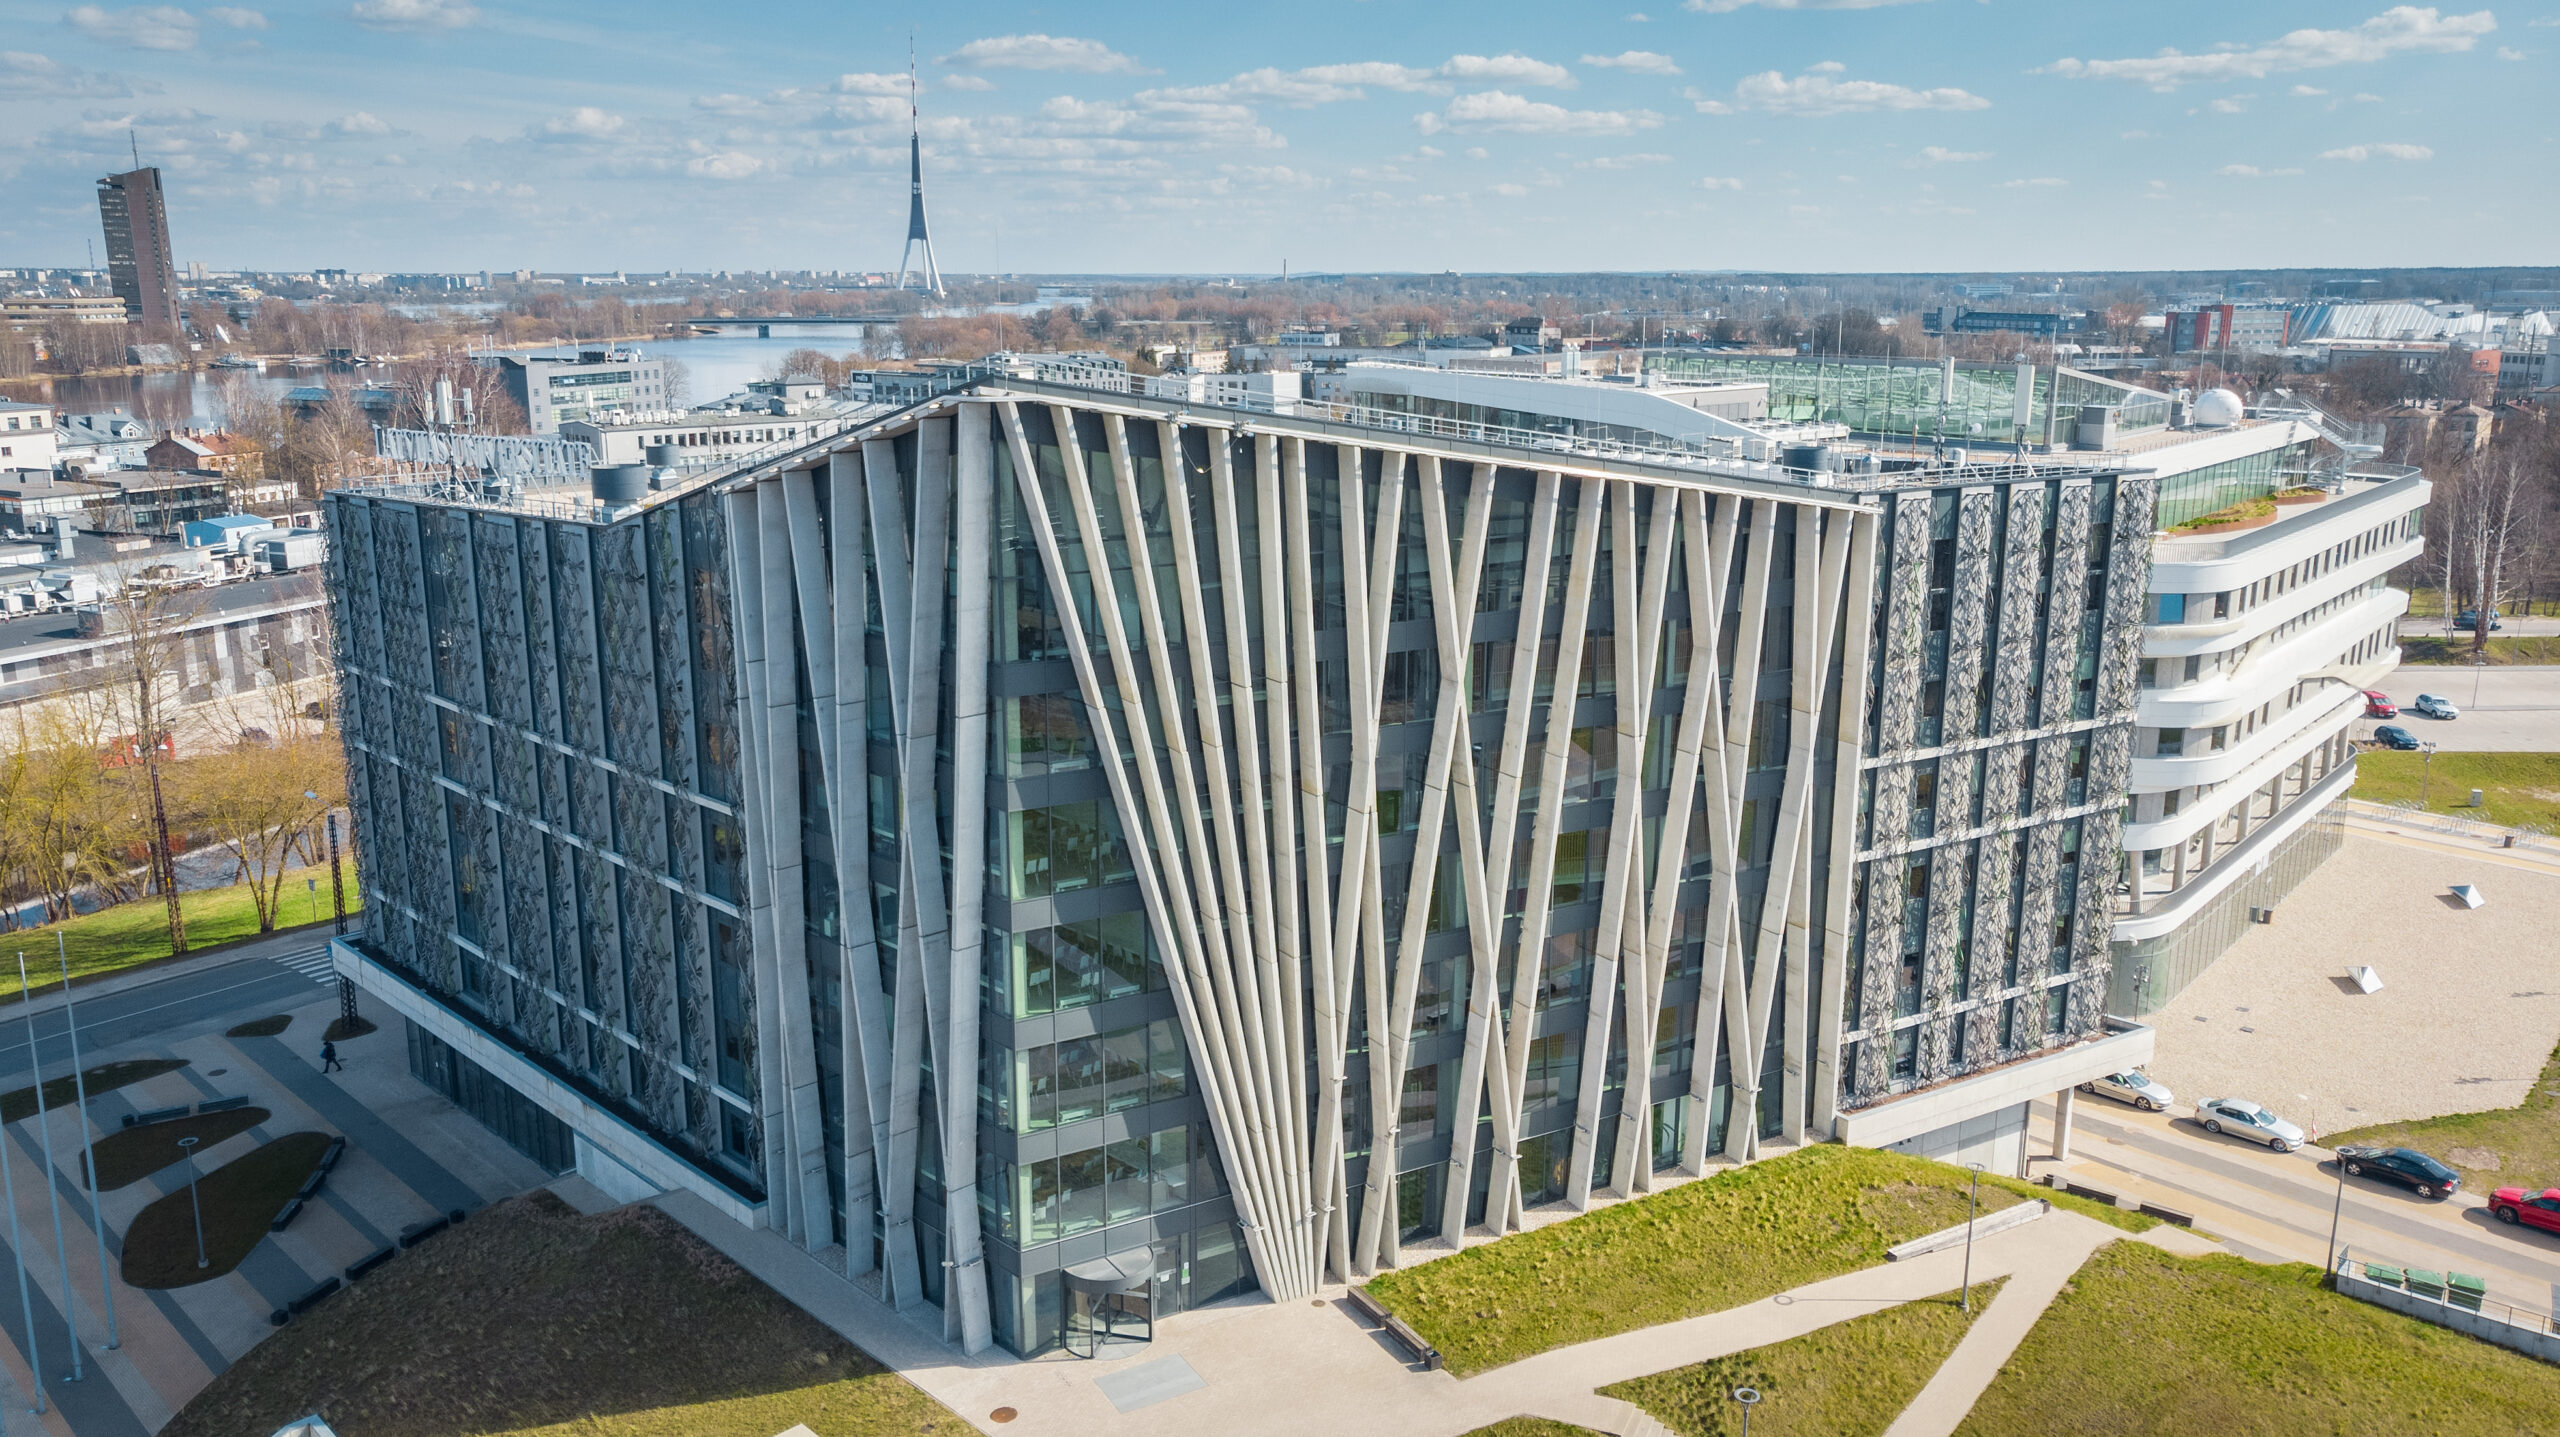 University of Latvia Find and Study 10 scaled - Letonya Üniversitesi